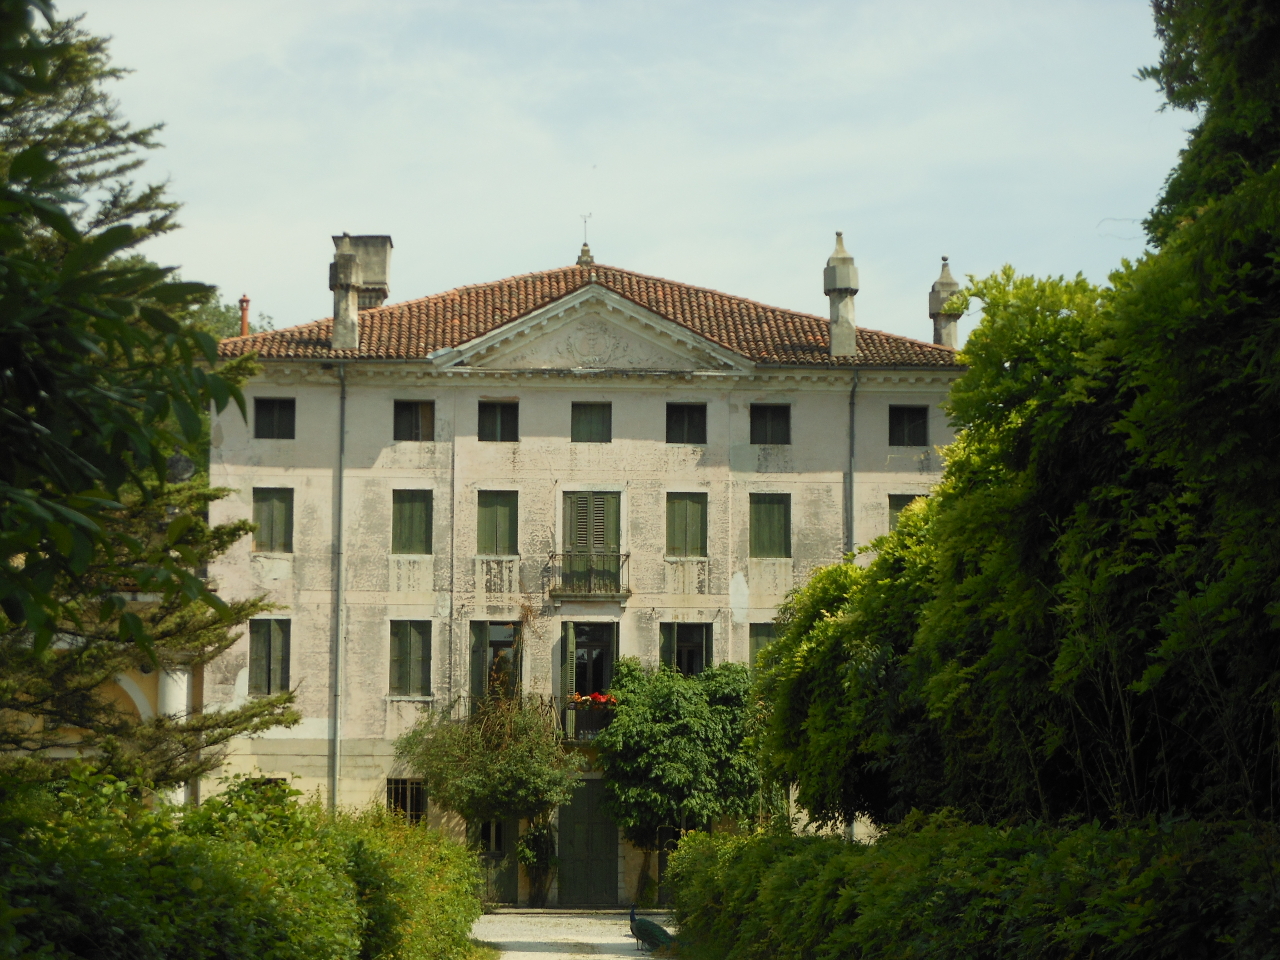 Villa Brunetta e parco circostante (villa, borghese) - Prata di Pordenone (PN) 